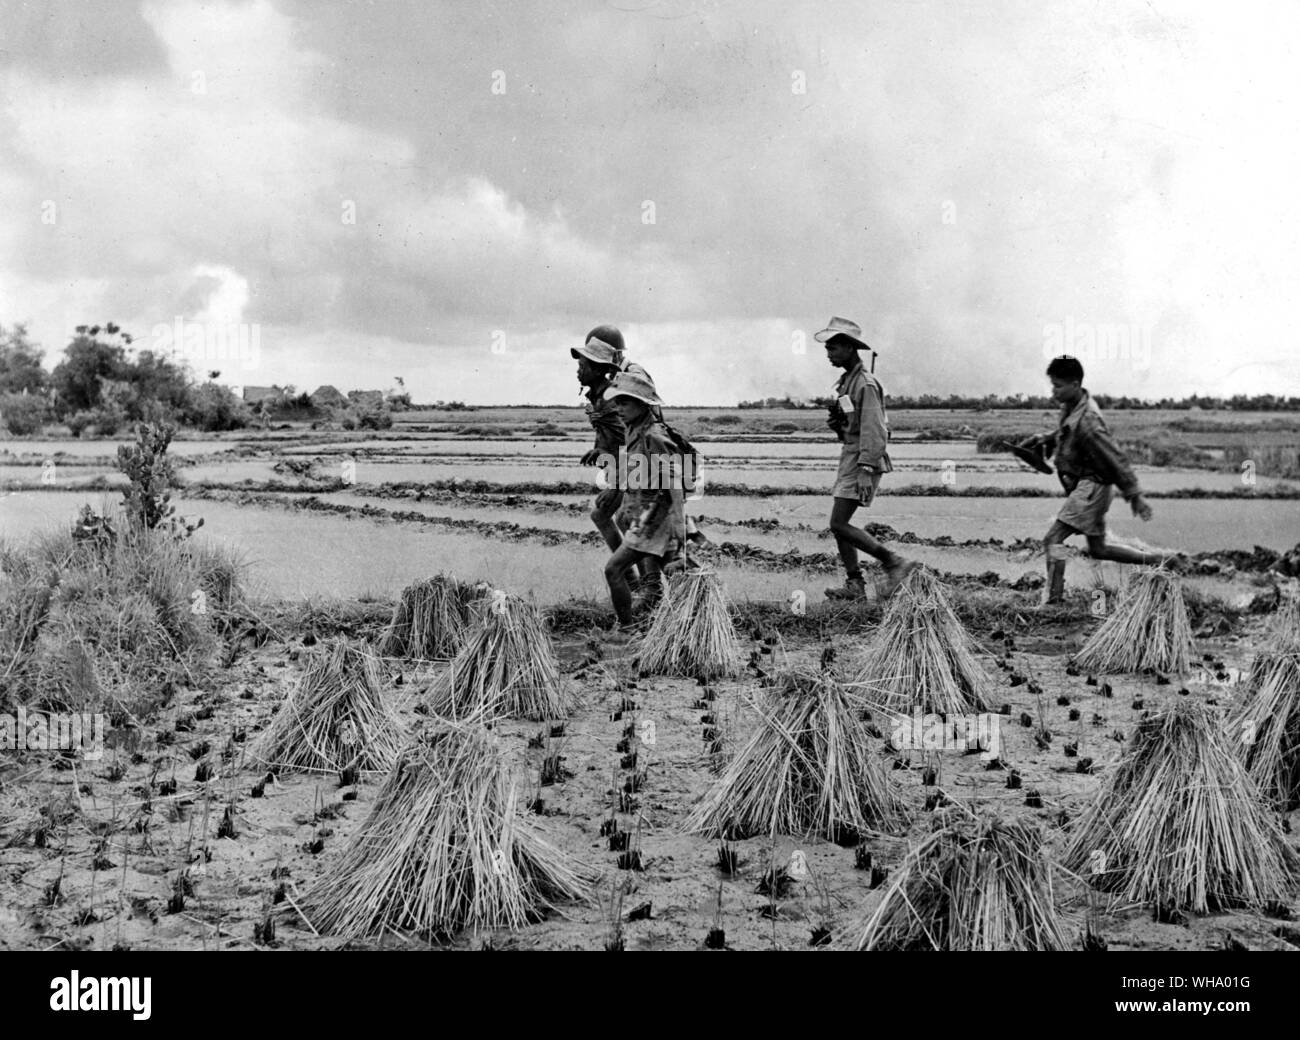 2 Juillet 1953 : La guerre d'Indochine. Un soldat vietnamien blessé est aidé à travers les champs de riz par leurs camarades. Banque D'Images